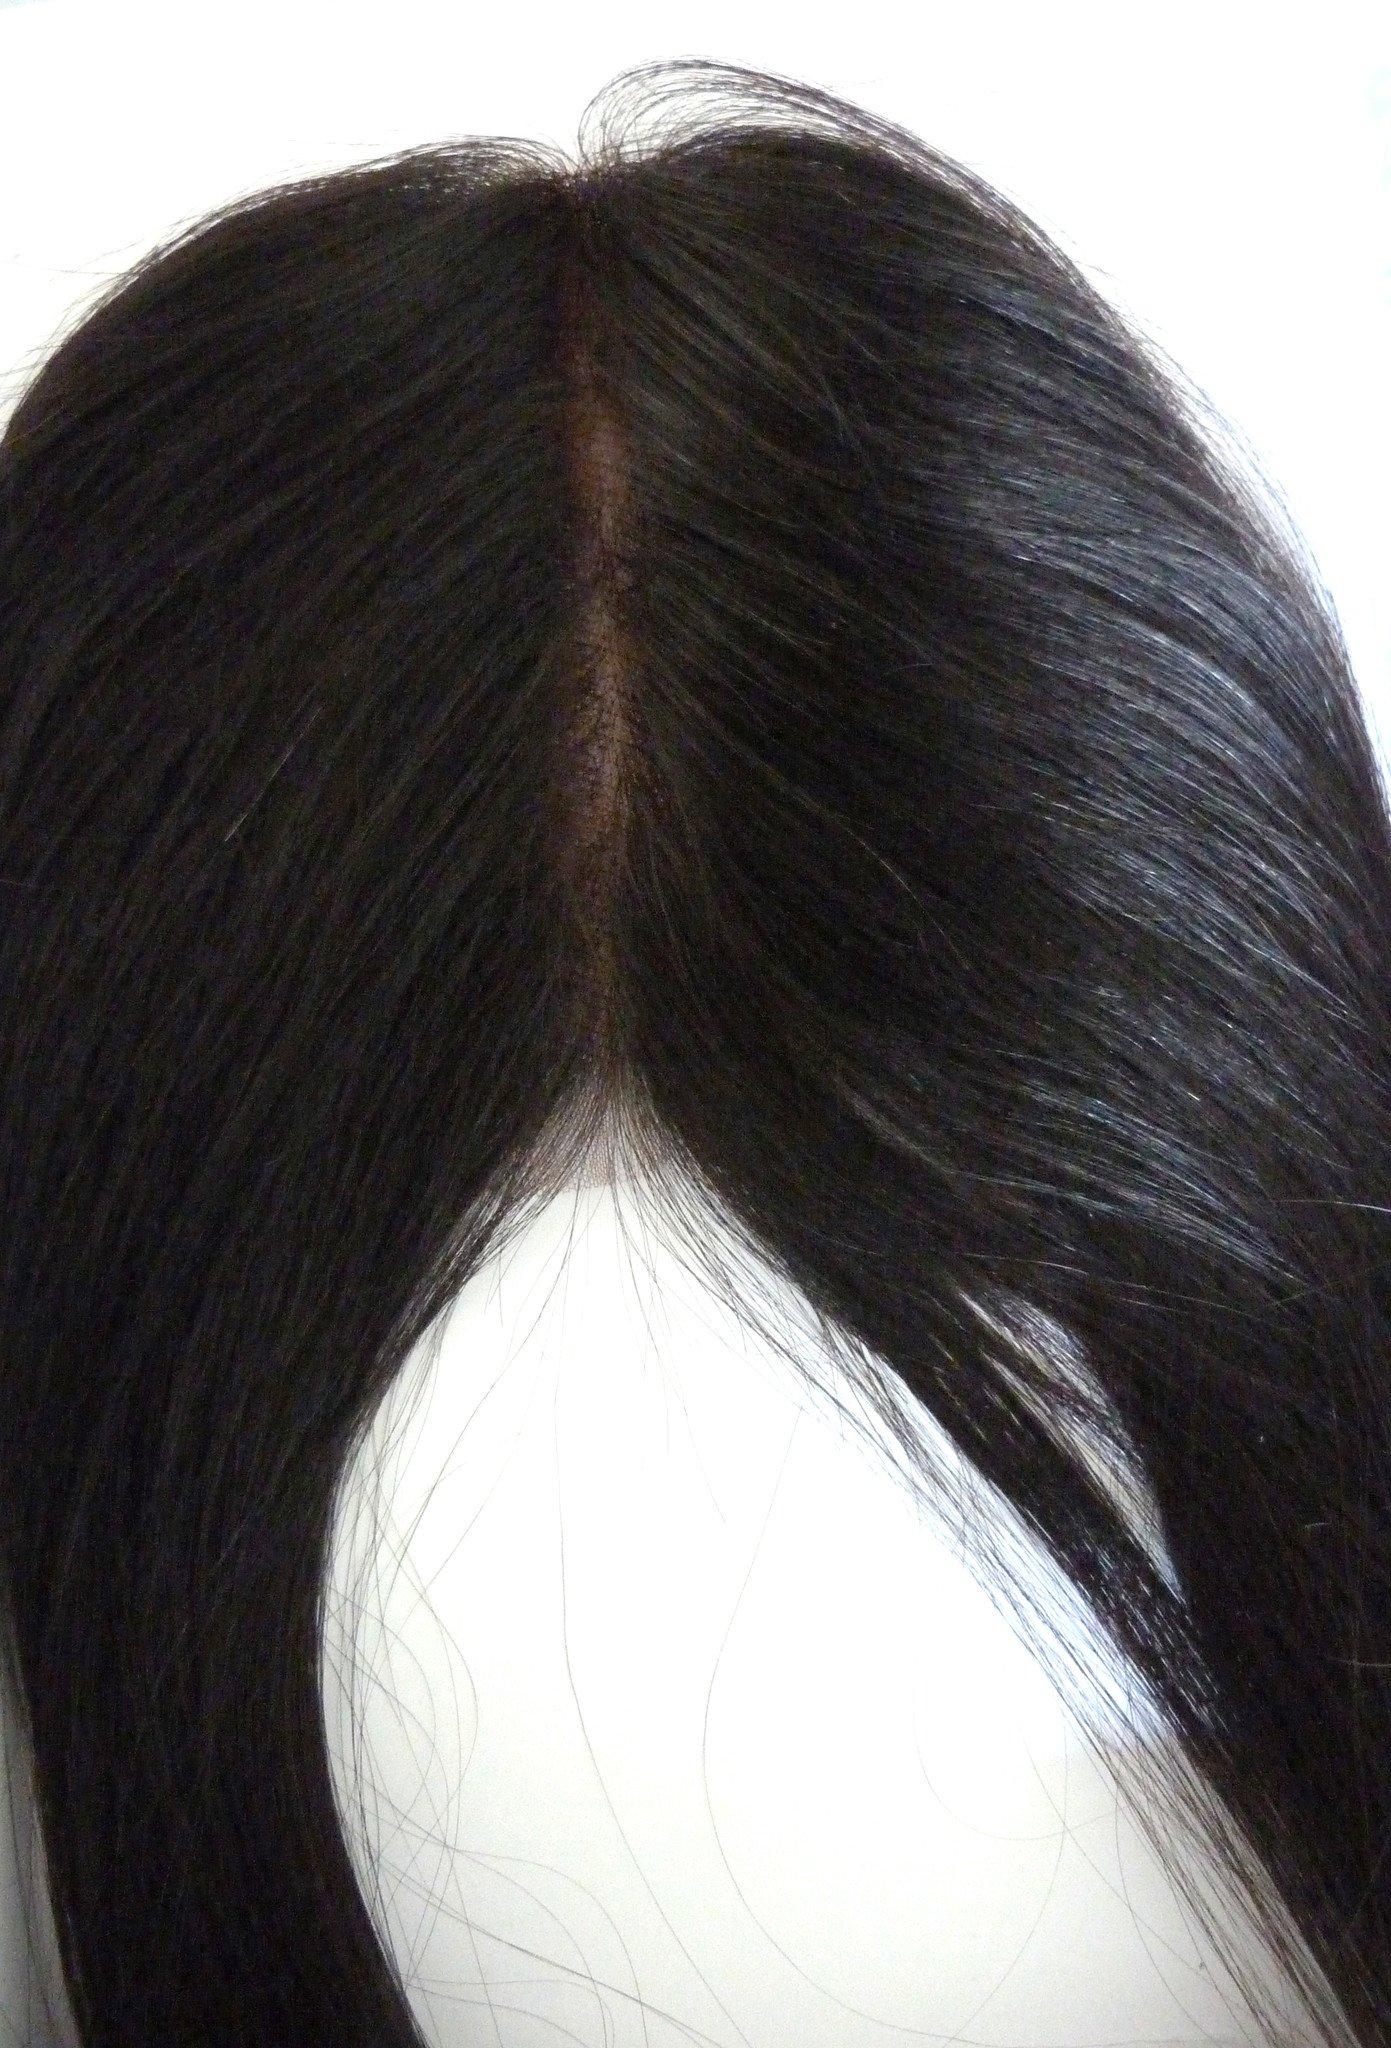 סגירת תחרה רמי בתולה הודית - 4x4 אינץ'- שיער ויופי בתולה, תוספות השיער הטובות ביותר, שיער אנושי בתול אמיתי.